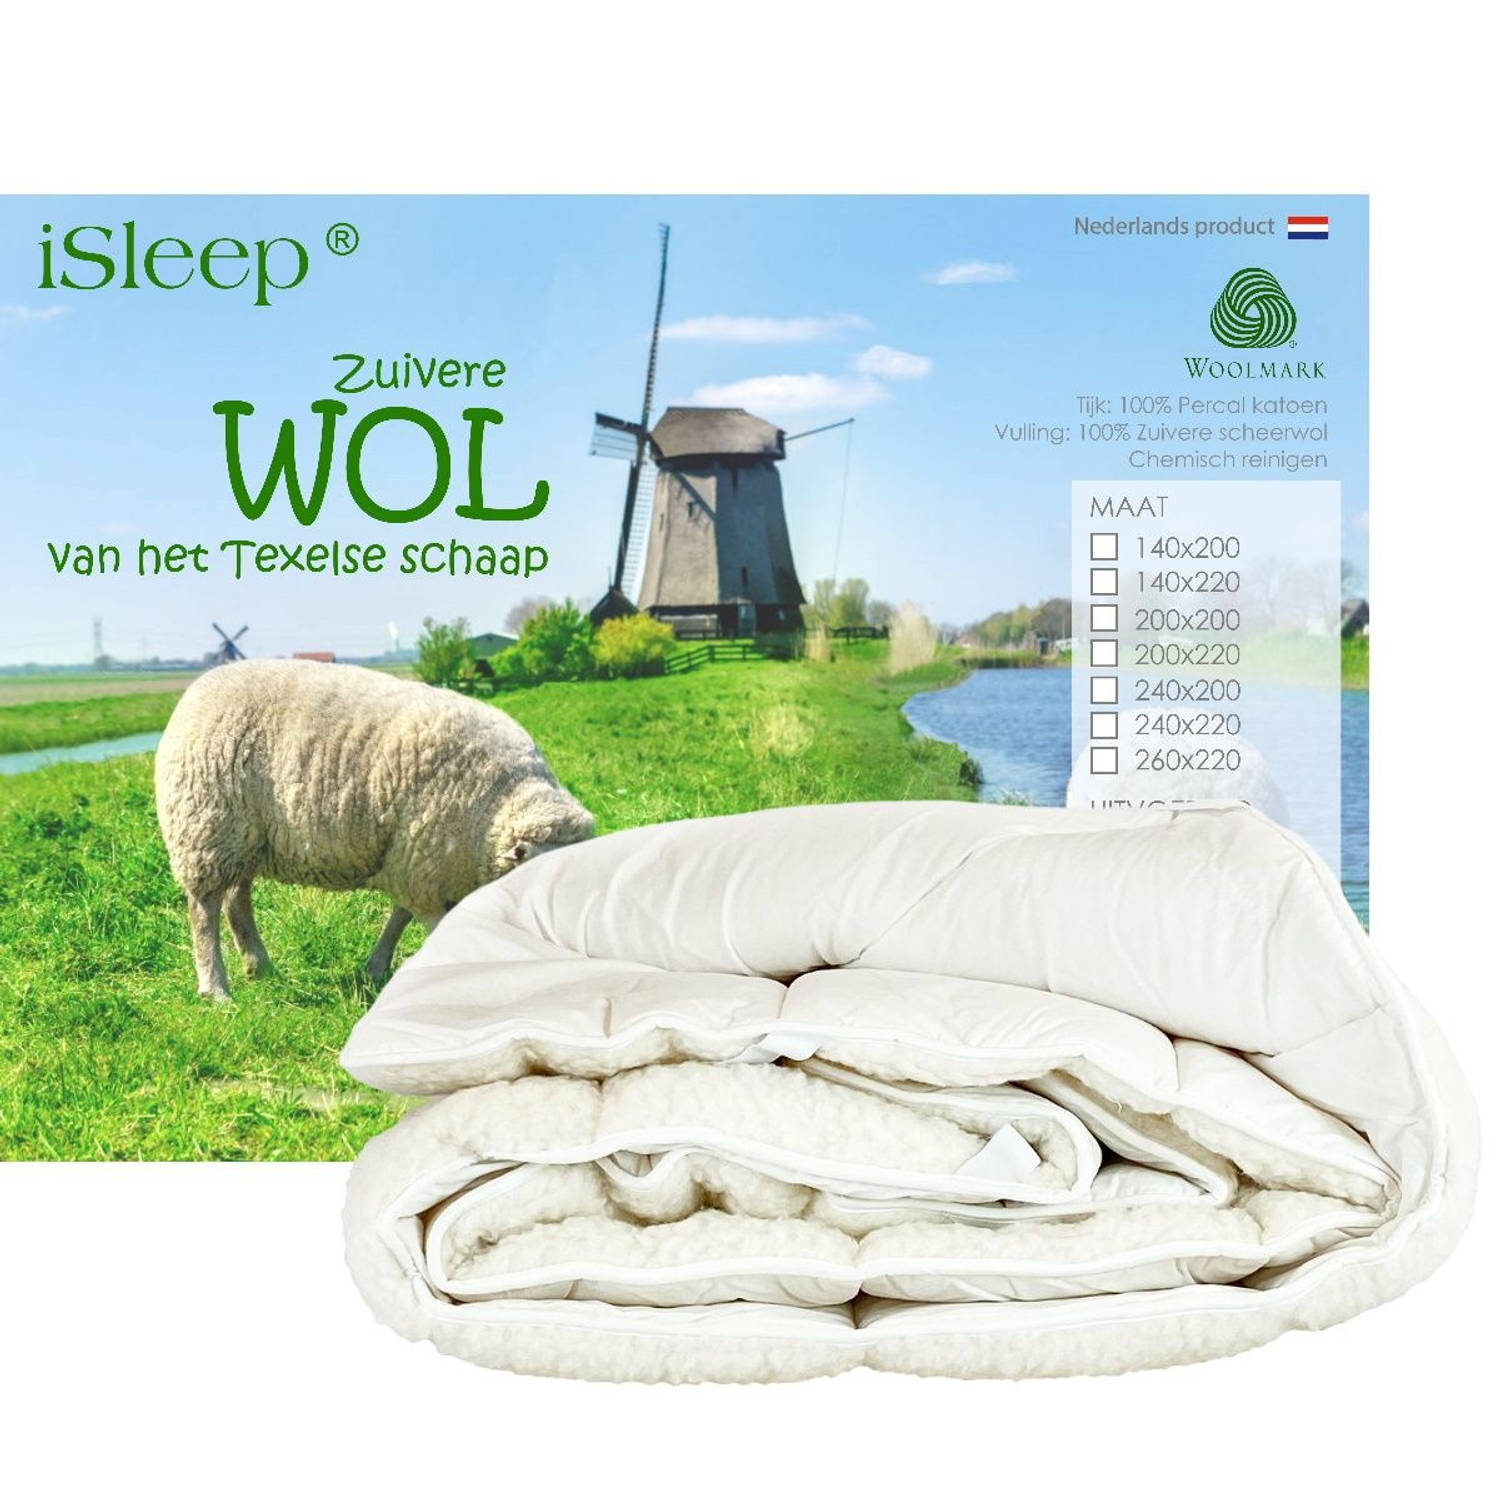 iSleep onderdeken wol Afmeting 160x200